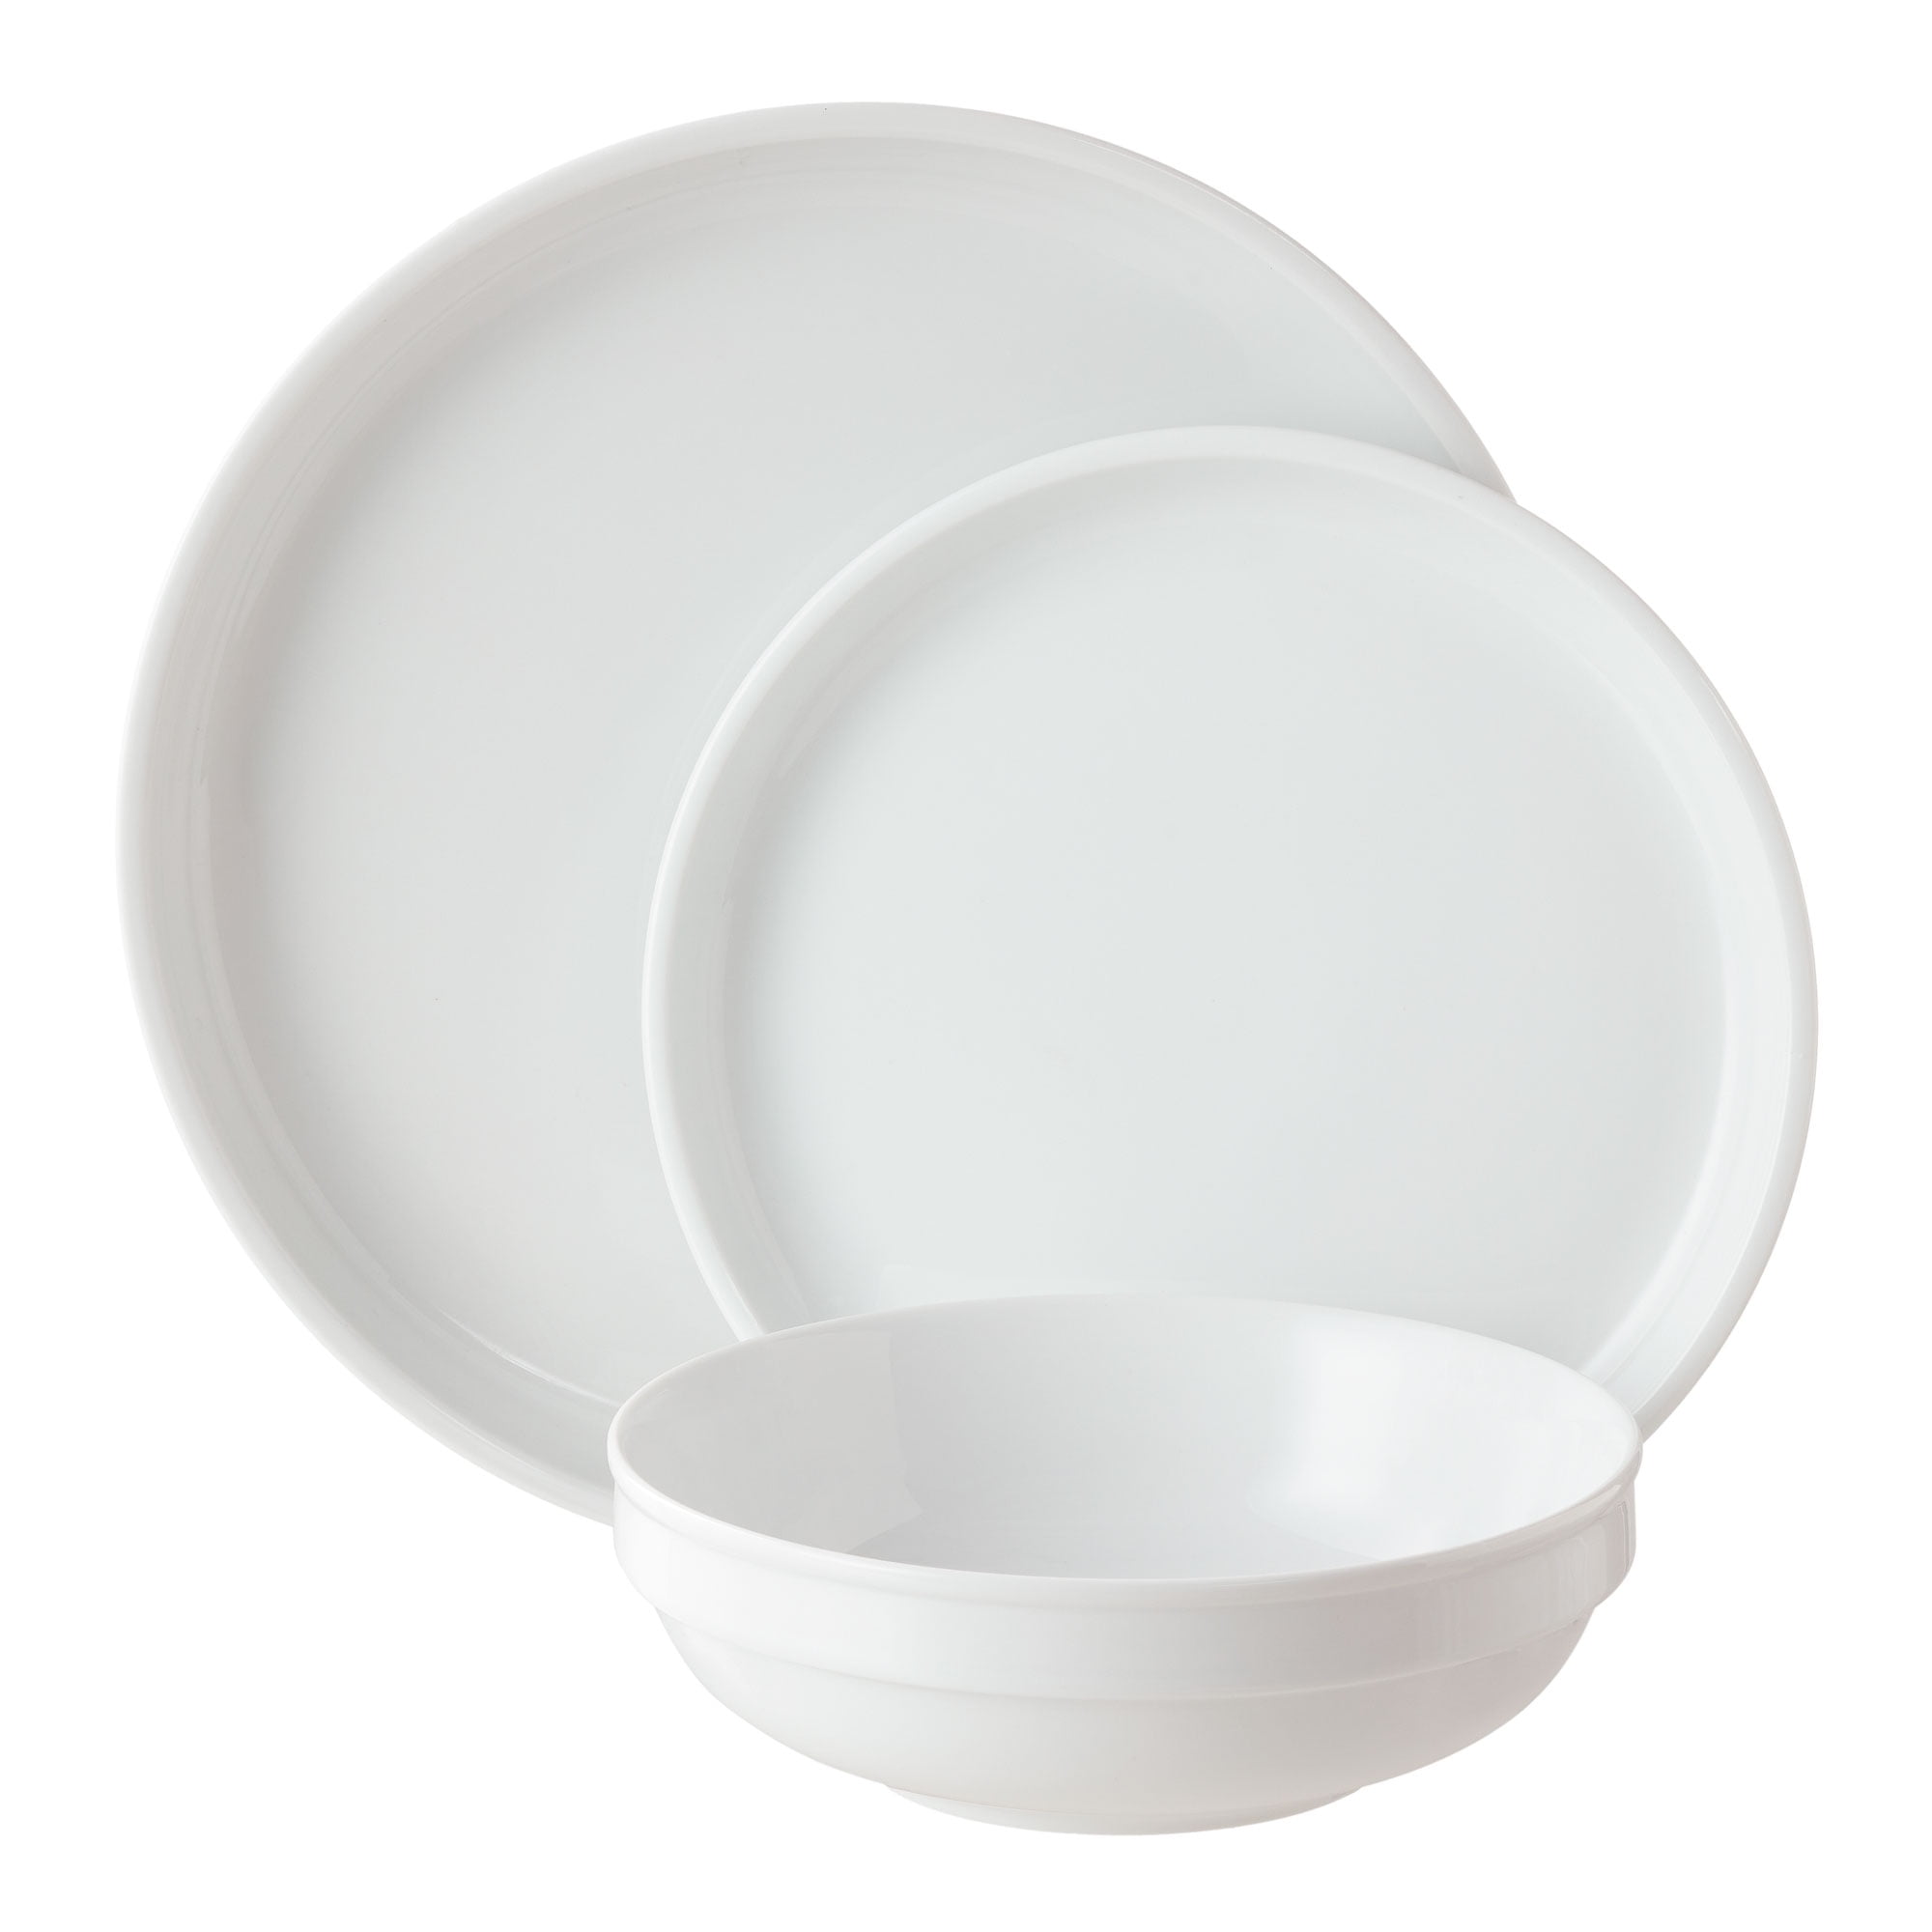 Stacked Seger White Dinnerware Set, Better Homes And Gardens Dinnerware Patterns